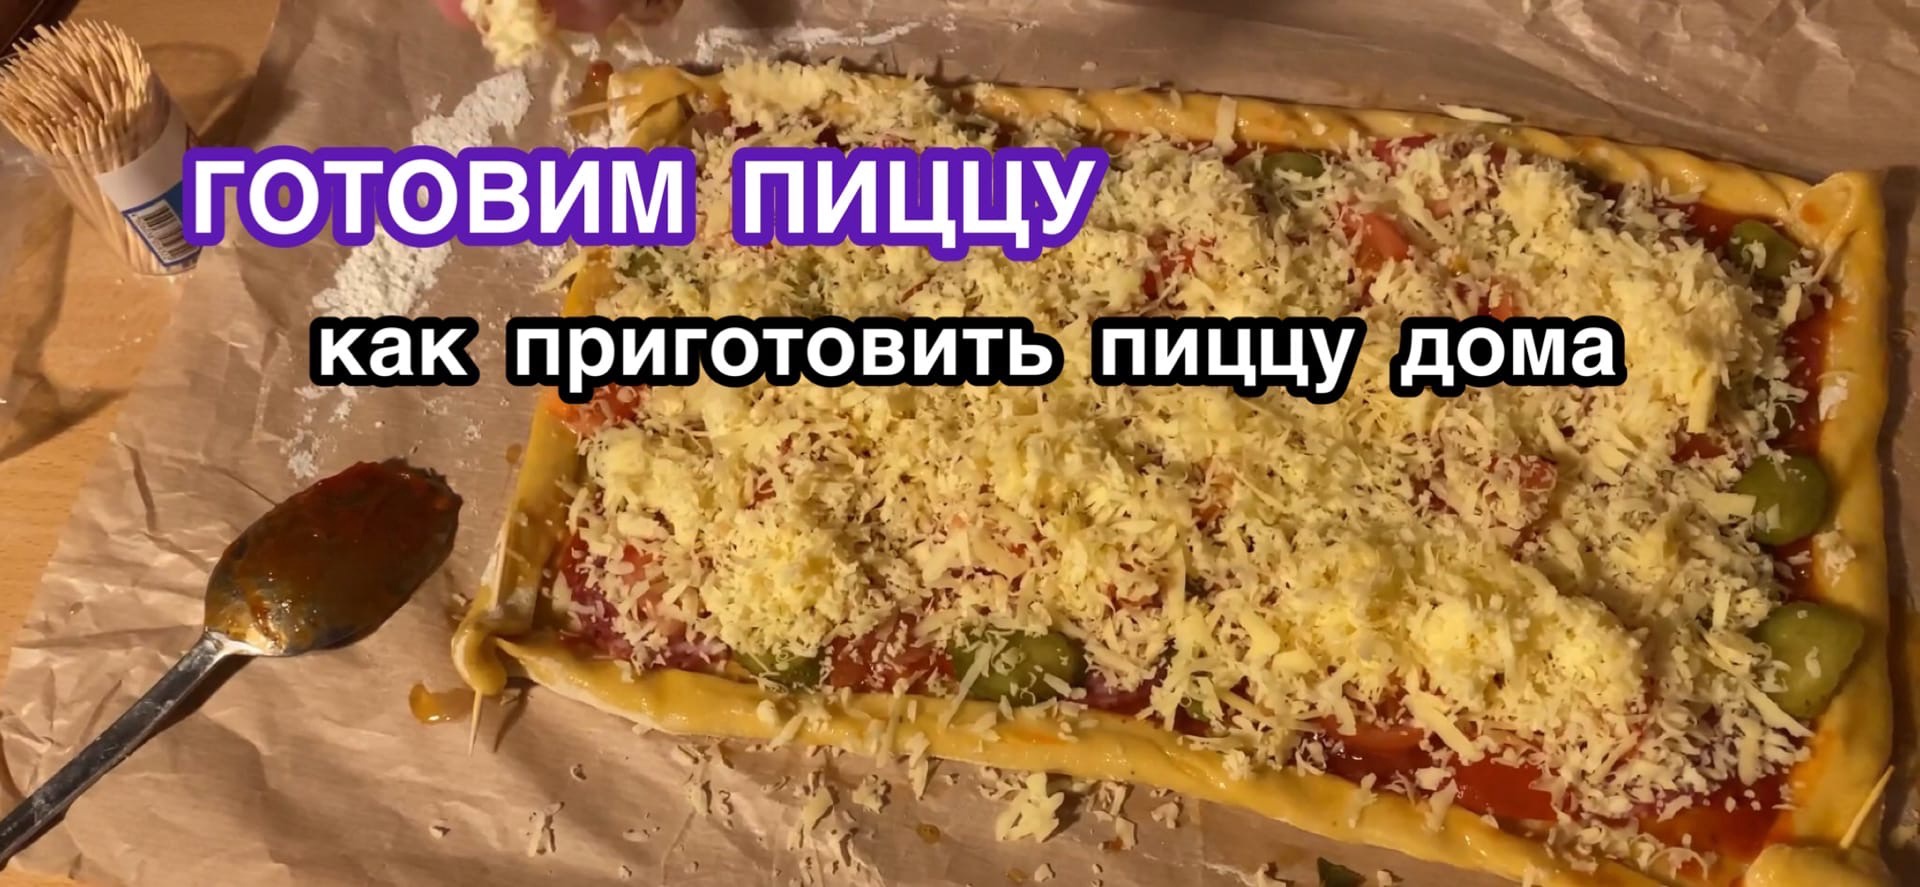 рецепт пиццы домашней видео фото 108